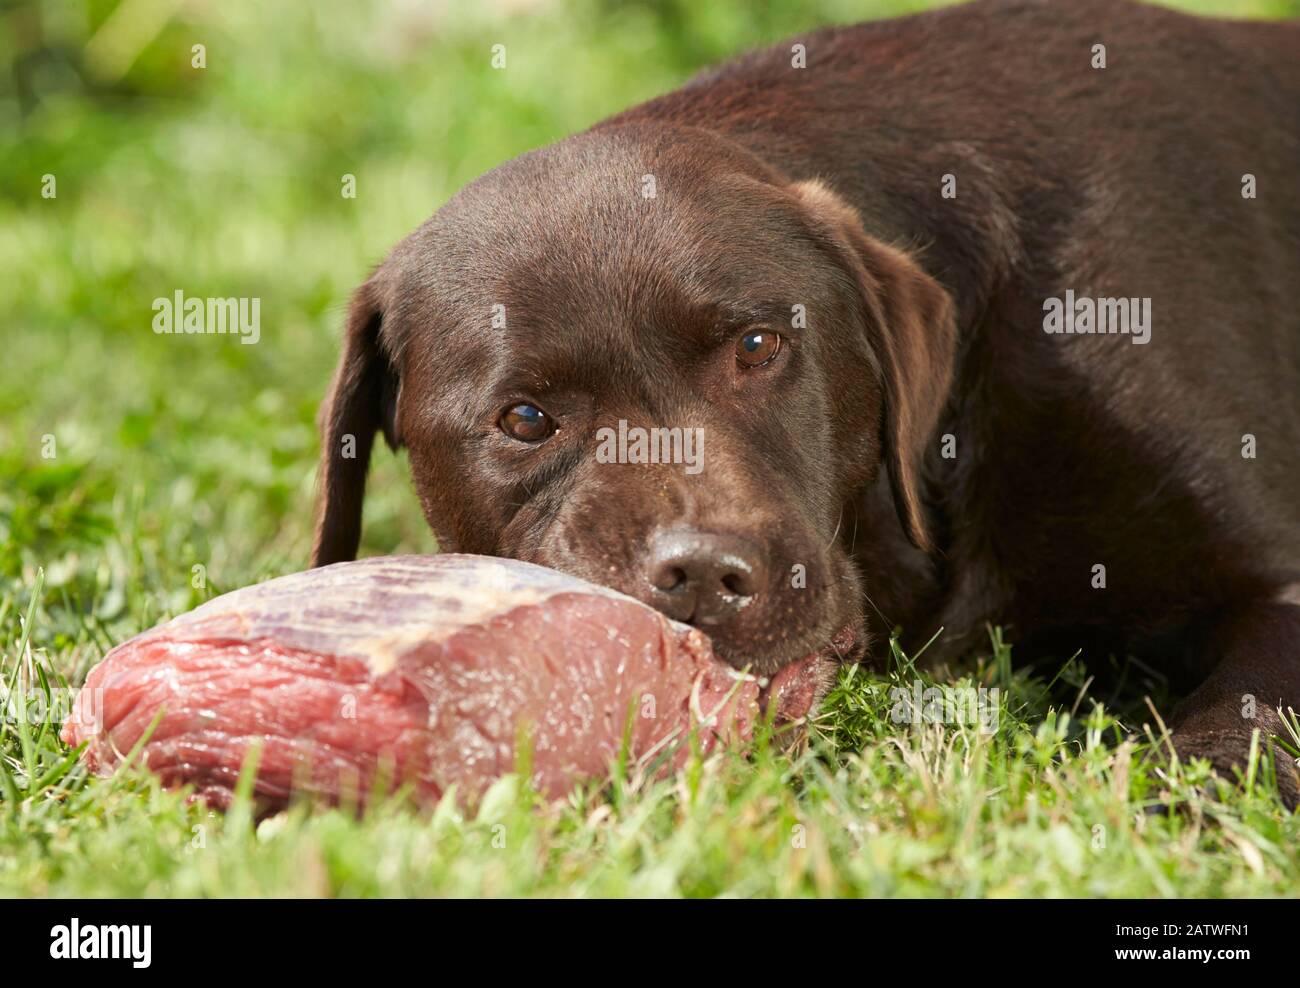 Brauner Labrador Retriever. Erwachsene, die während des Kauens auf einem Stück Fleisch im Gras liegen. Deutschland. Stockfoto